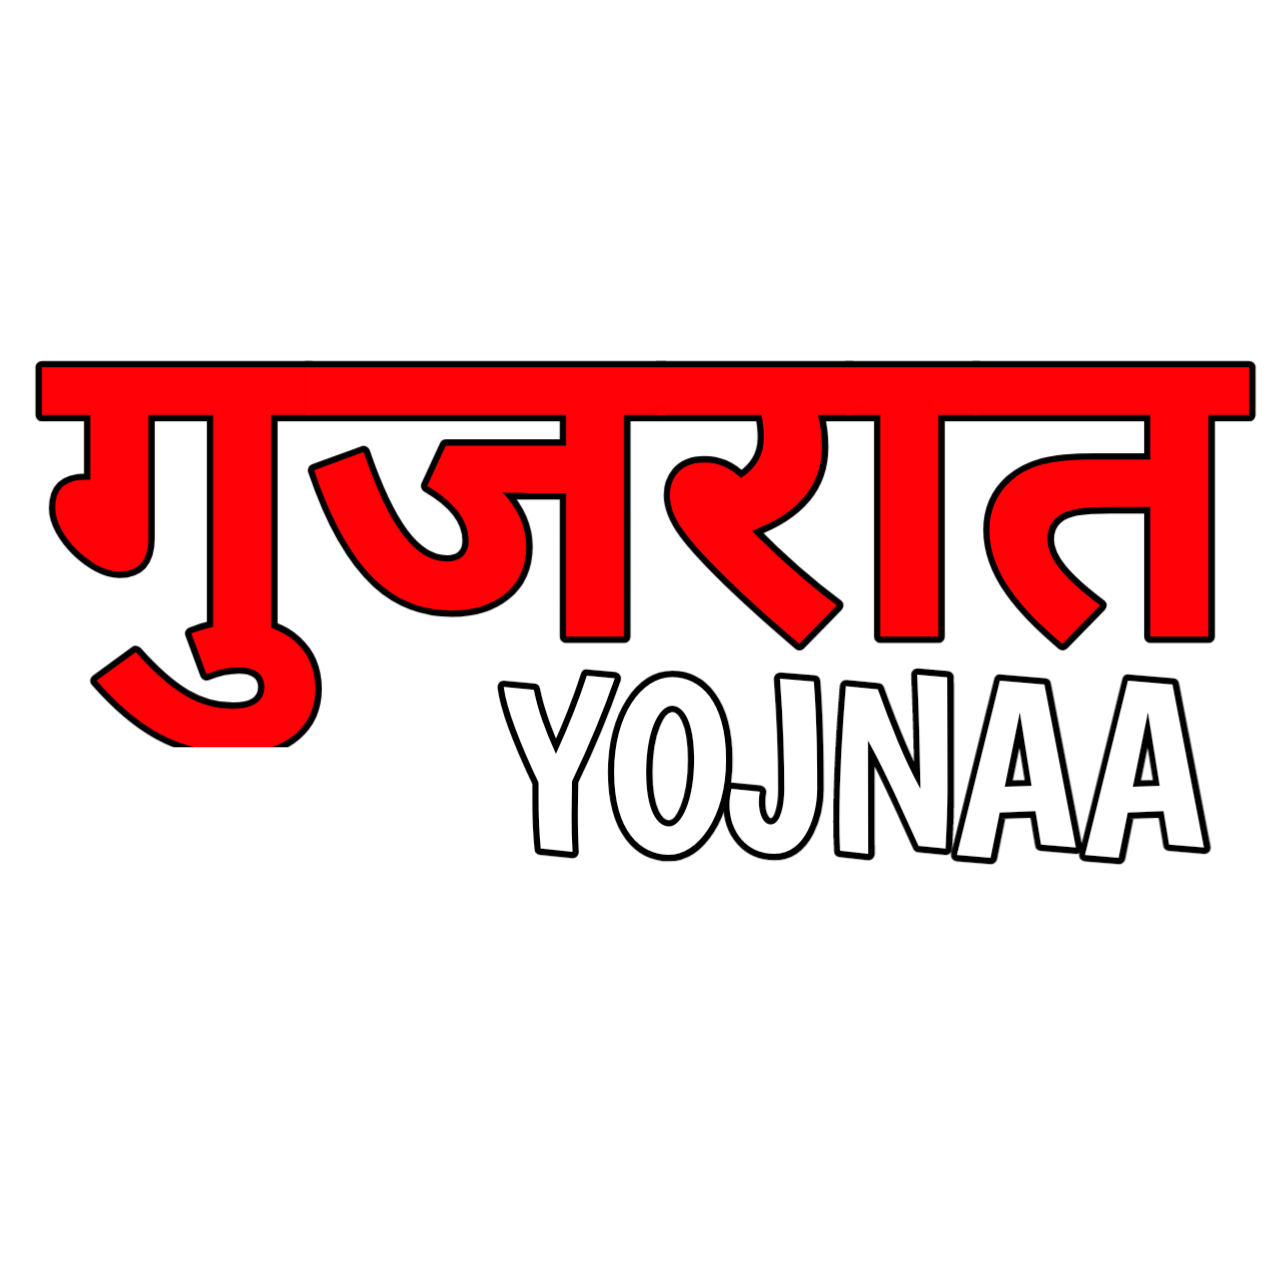 Gujarat Yojanaa